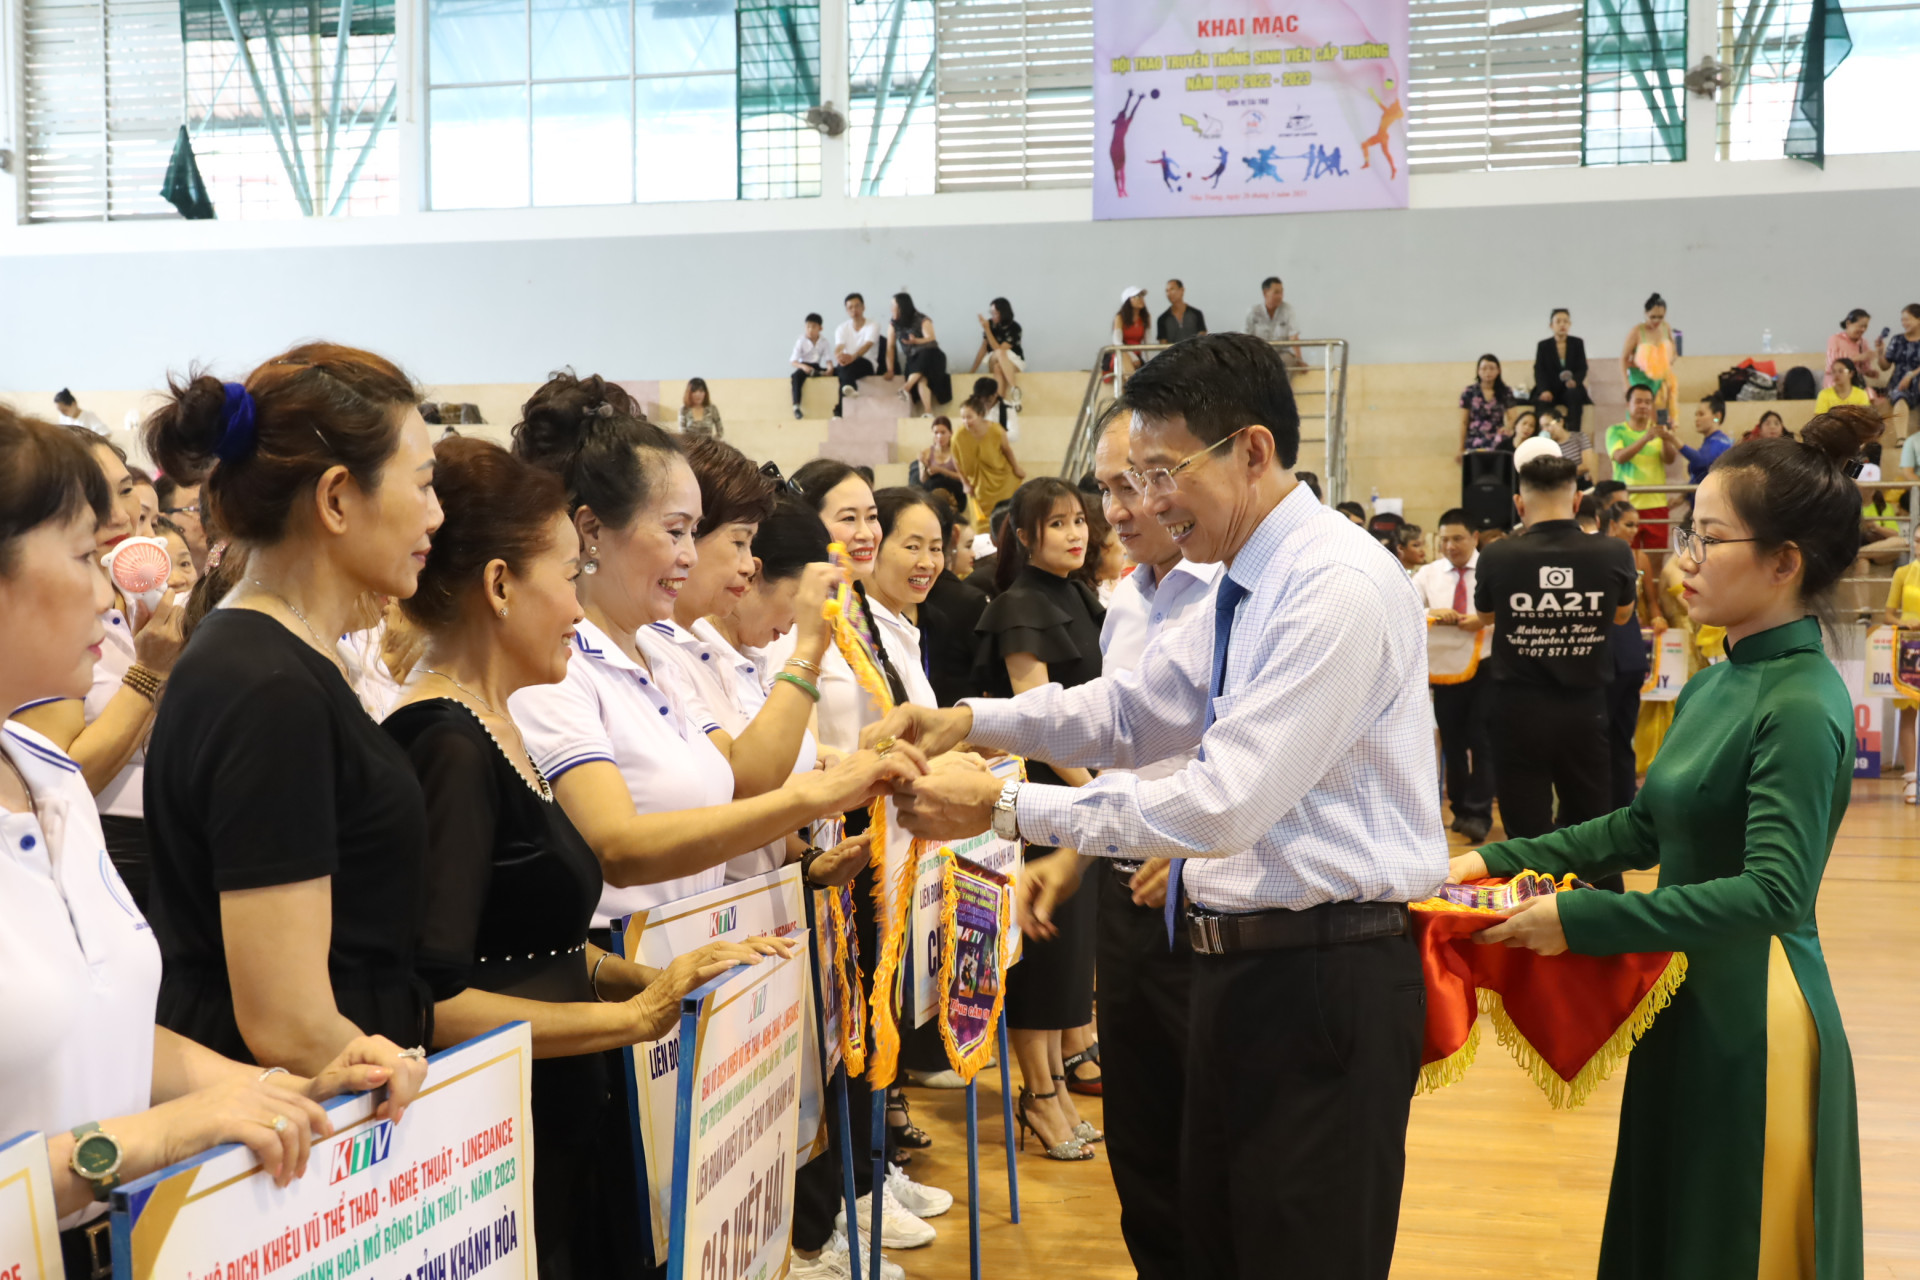 Đồng chí Đinh Văn Thiệu trao cờ lưu niệm cho các câu lạc bộ tham gia giải.